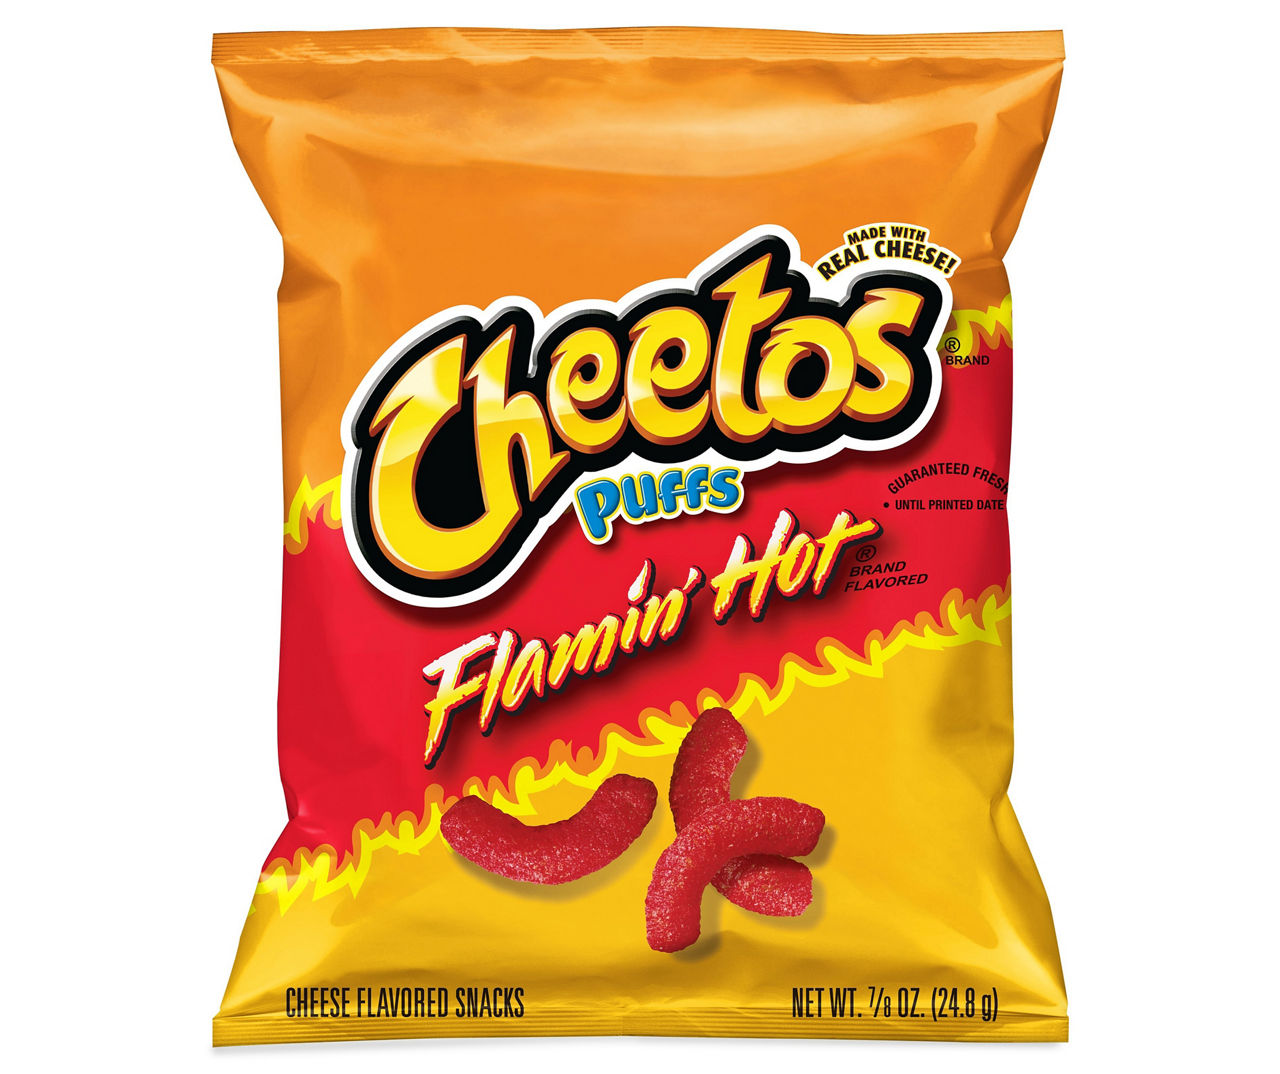 Cheetos Puffs Cheese Snacks (0.875 oz., 50 ct.) - Sam's Club